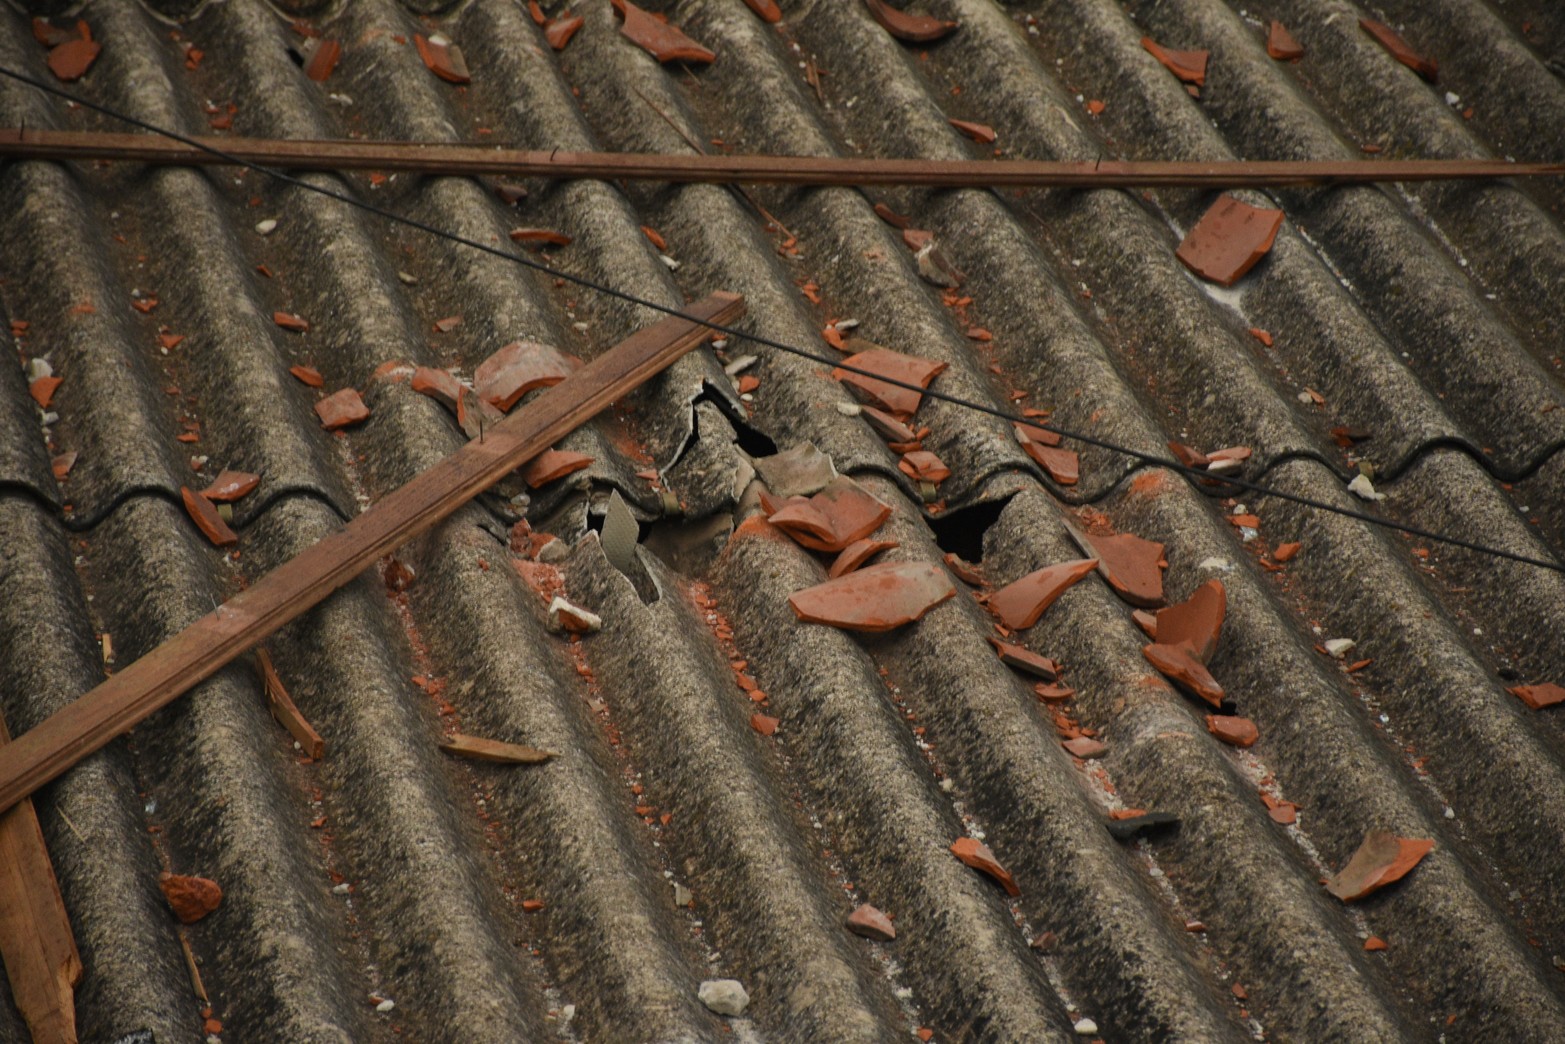 Los techos de casa vecinas quedaron con restos de materiales de la explosión. Foto Mauricio Garín